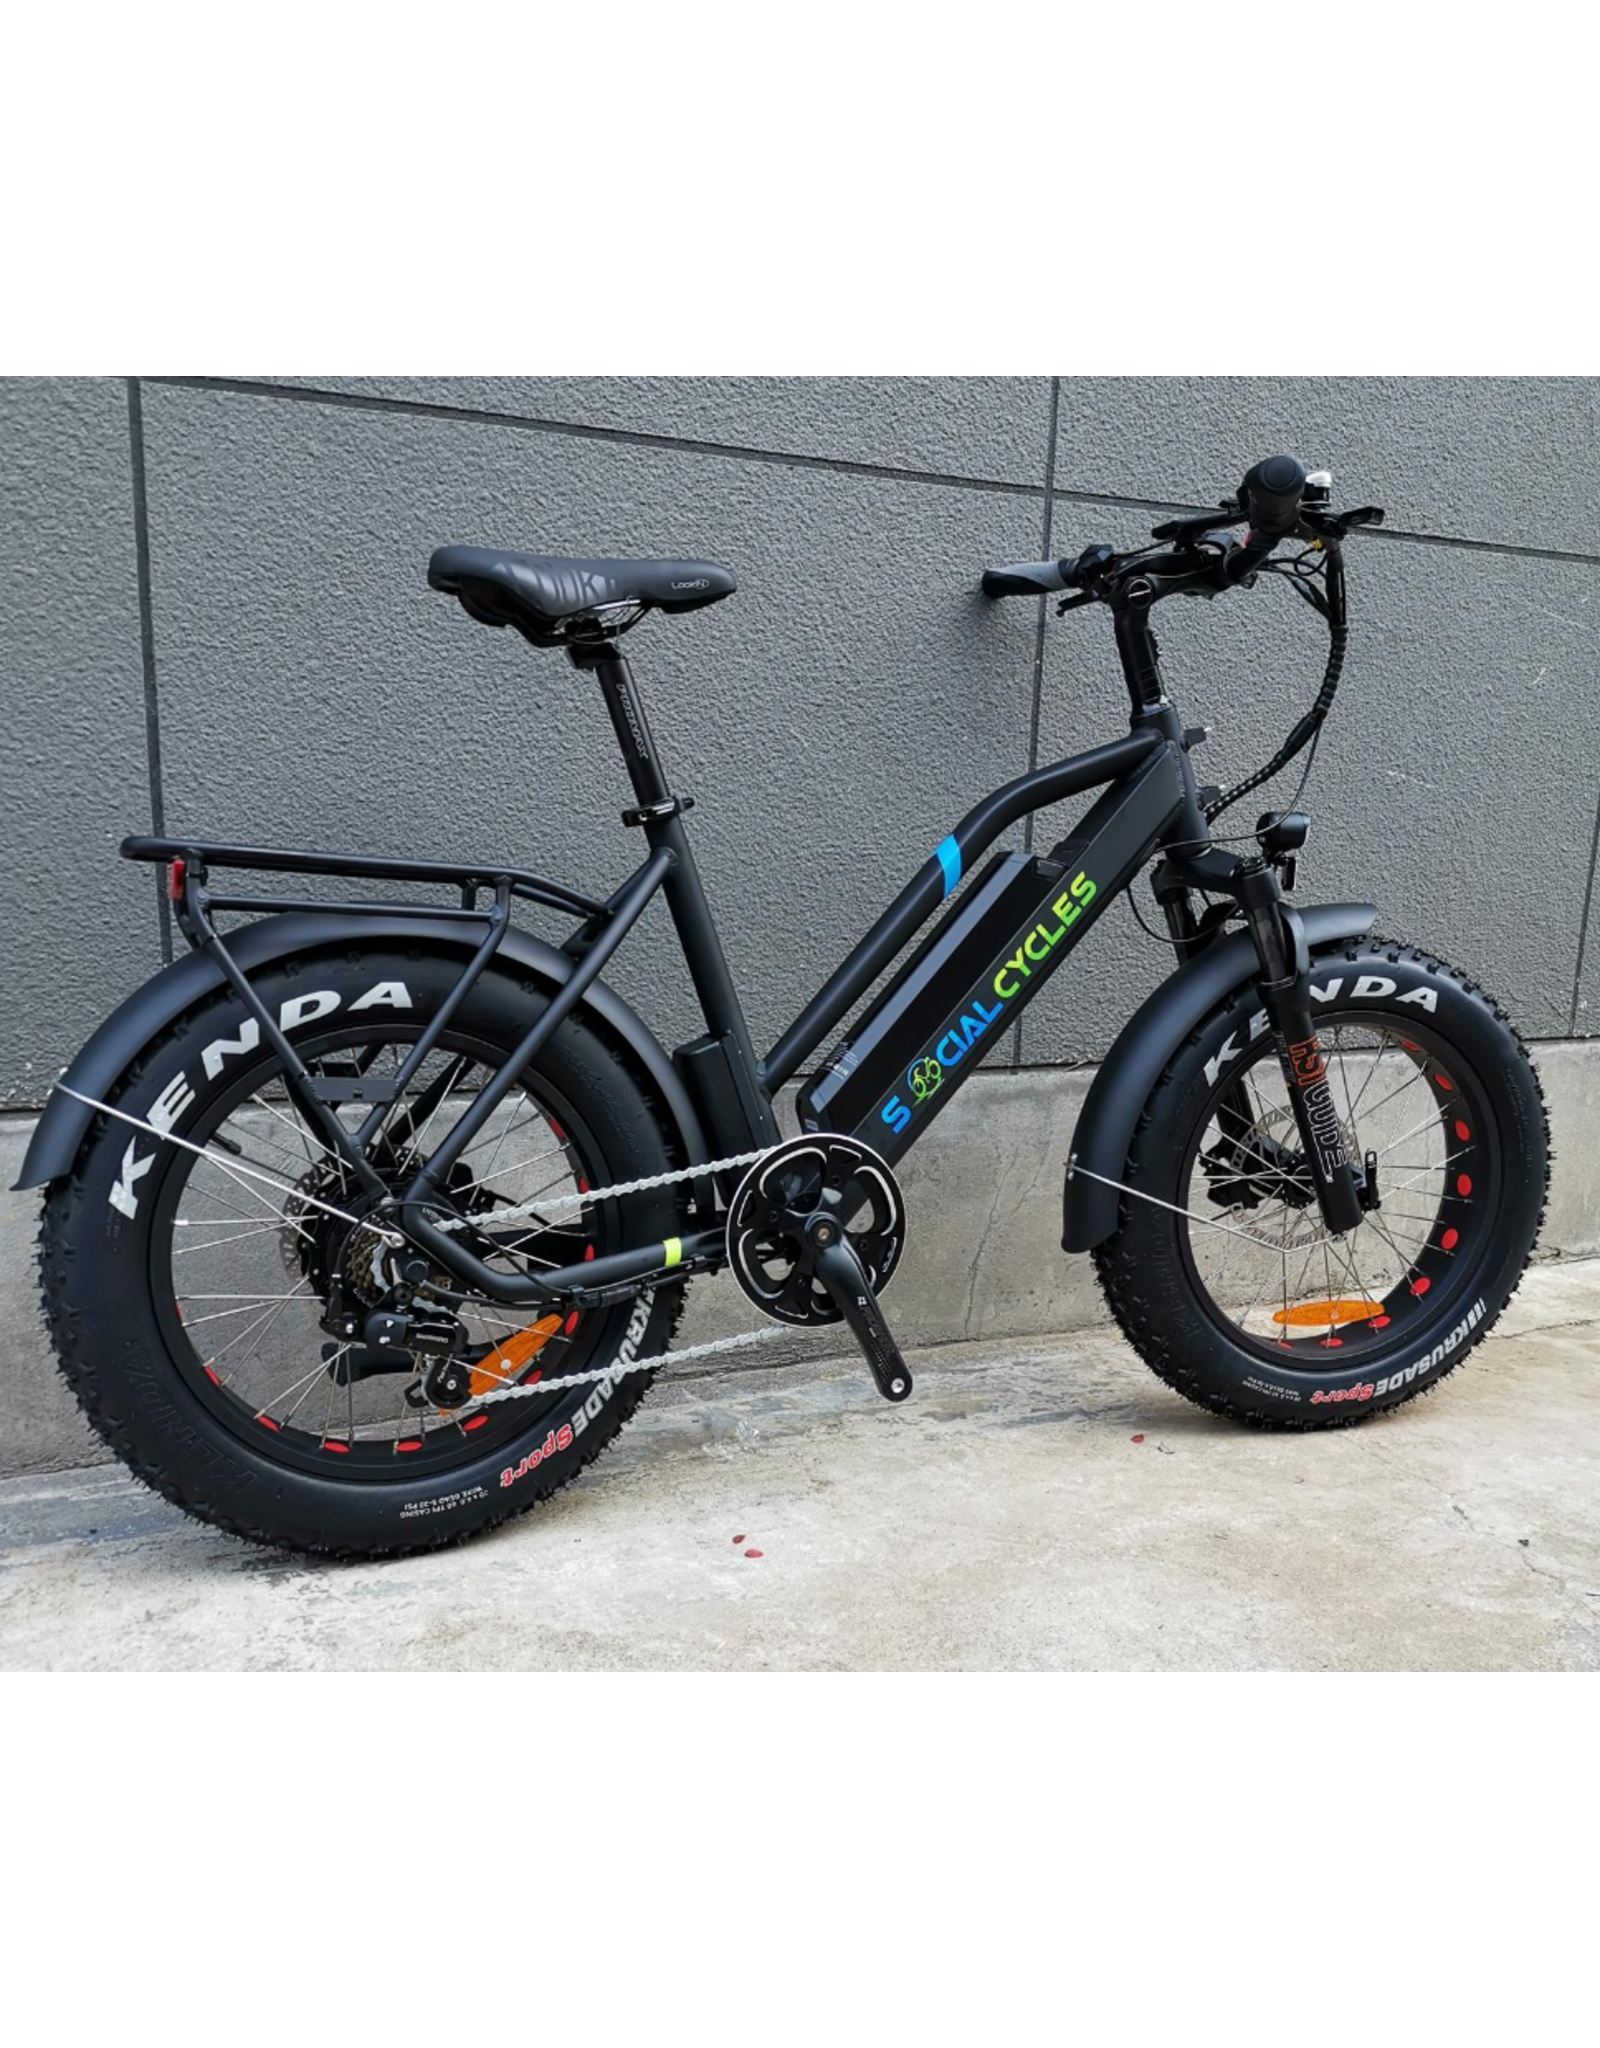 MS EBIKE SC2 EBIKES Fat Bike 48V/750 WATT BLACK 2021